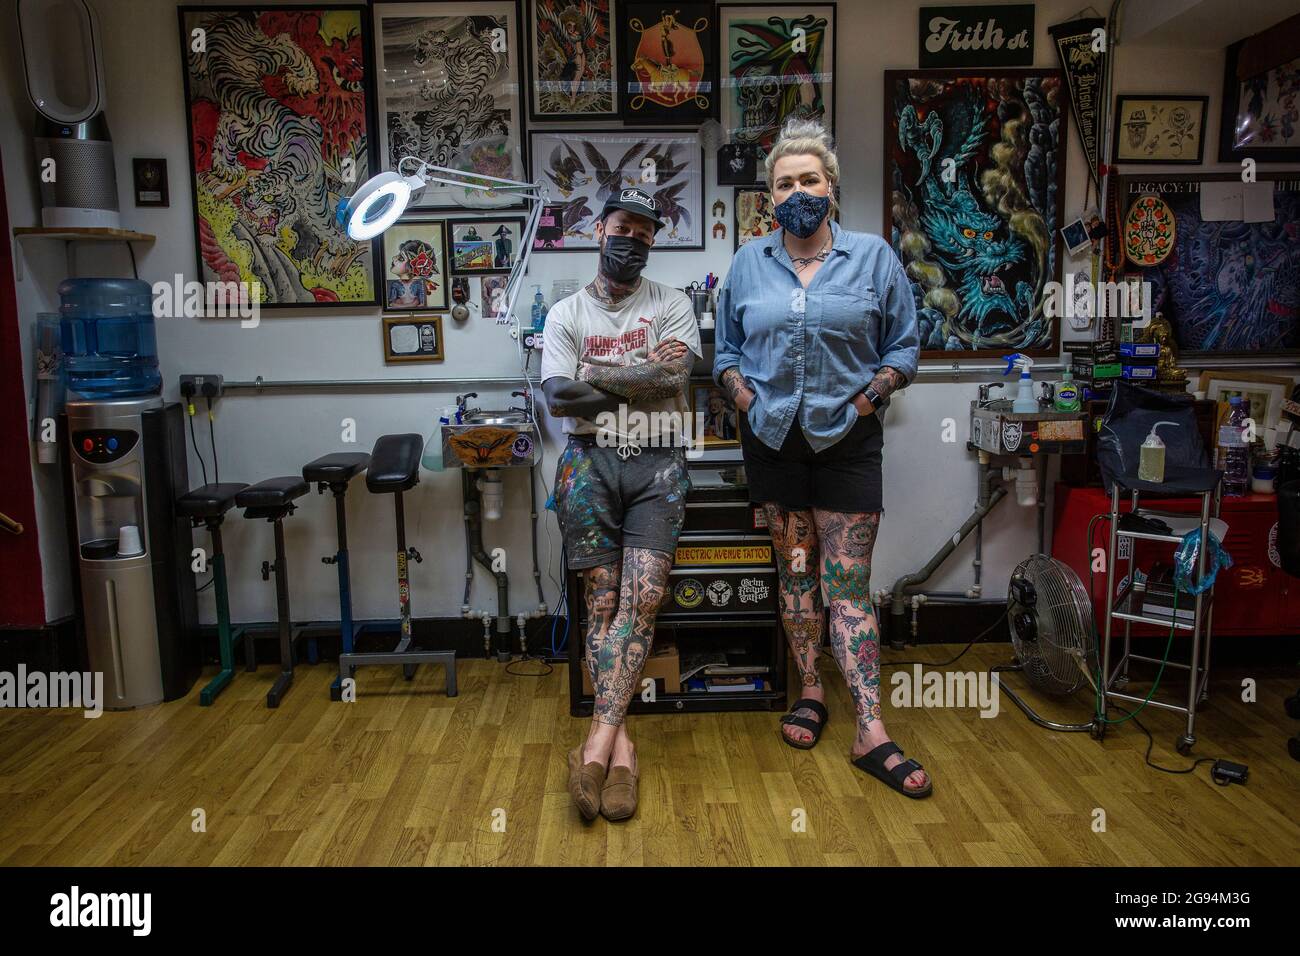 Artistes de tatouage masculins et féminins portant un masque de visage au studio de tatouage Frith Street Tattoo à Soho, Londres, Royaume-Uni Banque D'Images